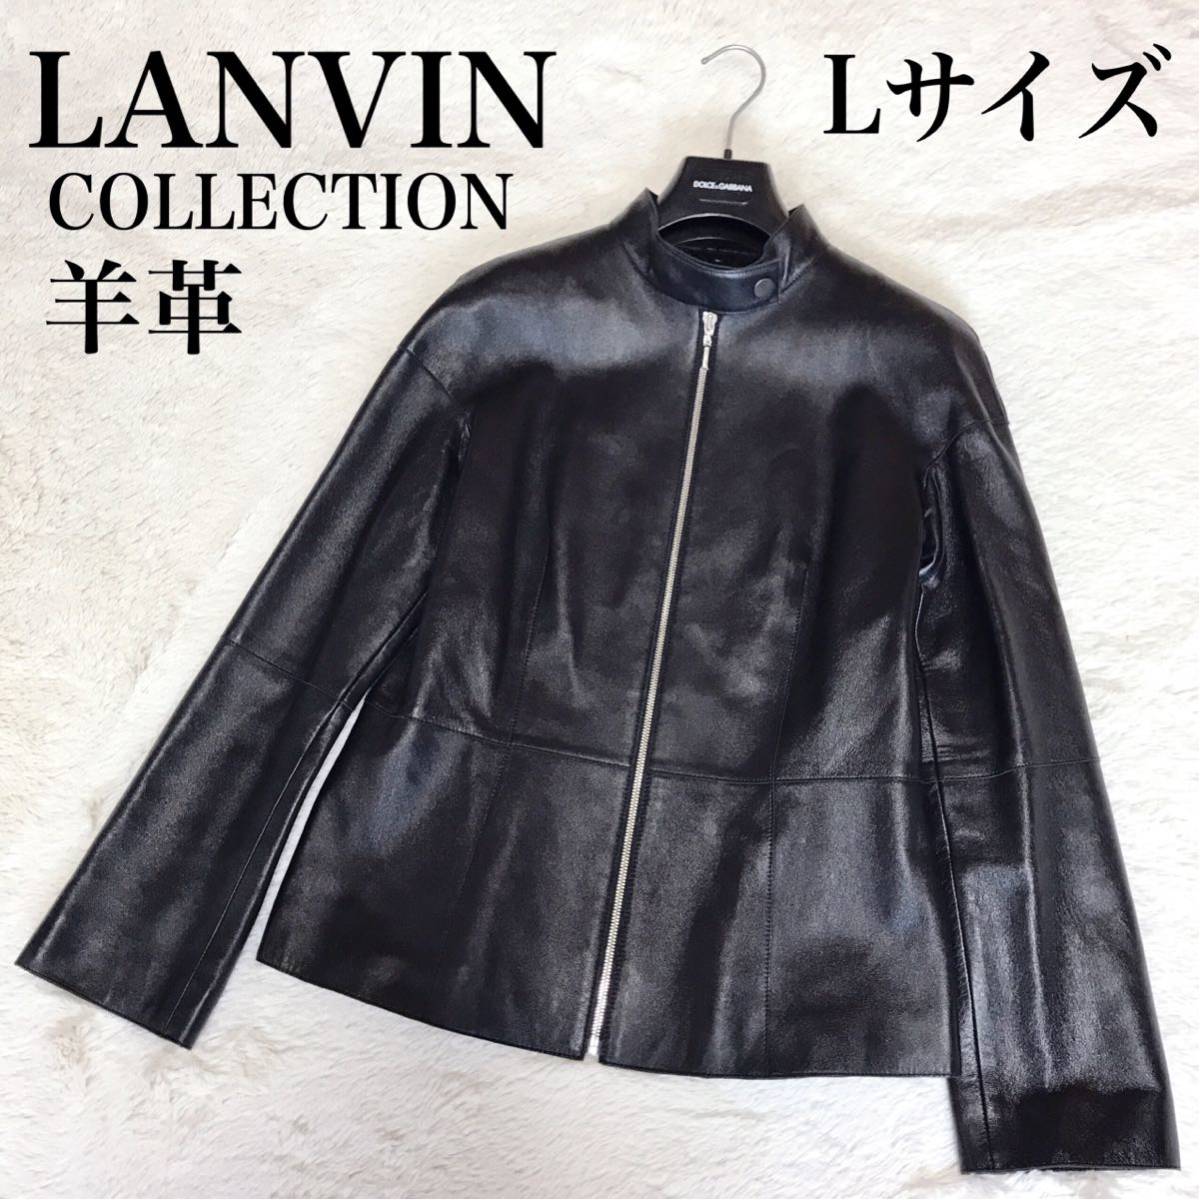 美品 LANVIN collection ラムレザー シングル レザージャケット